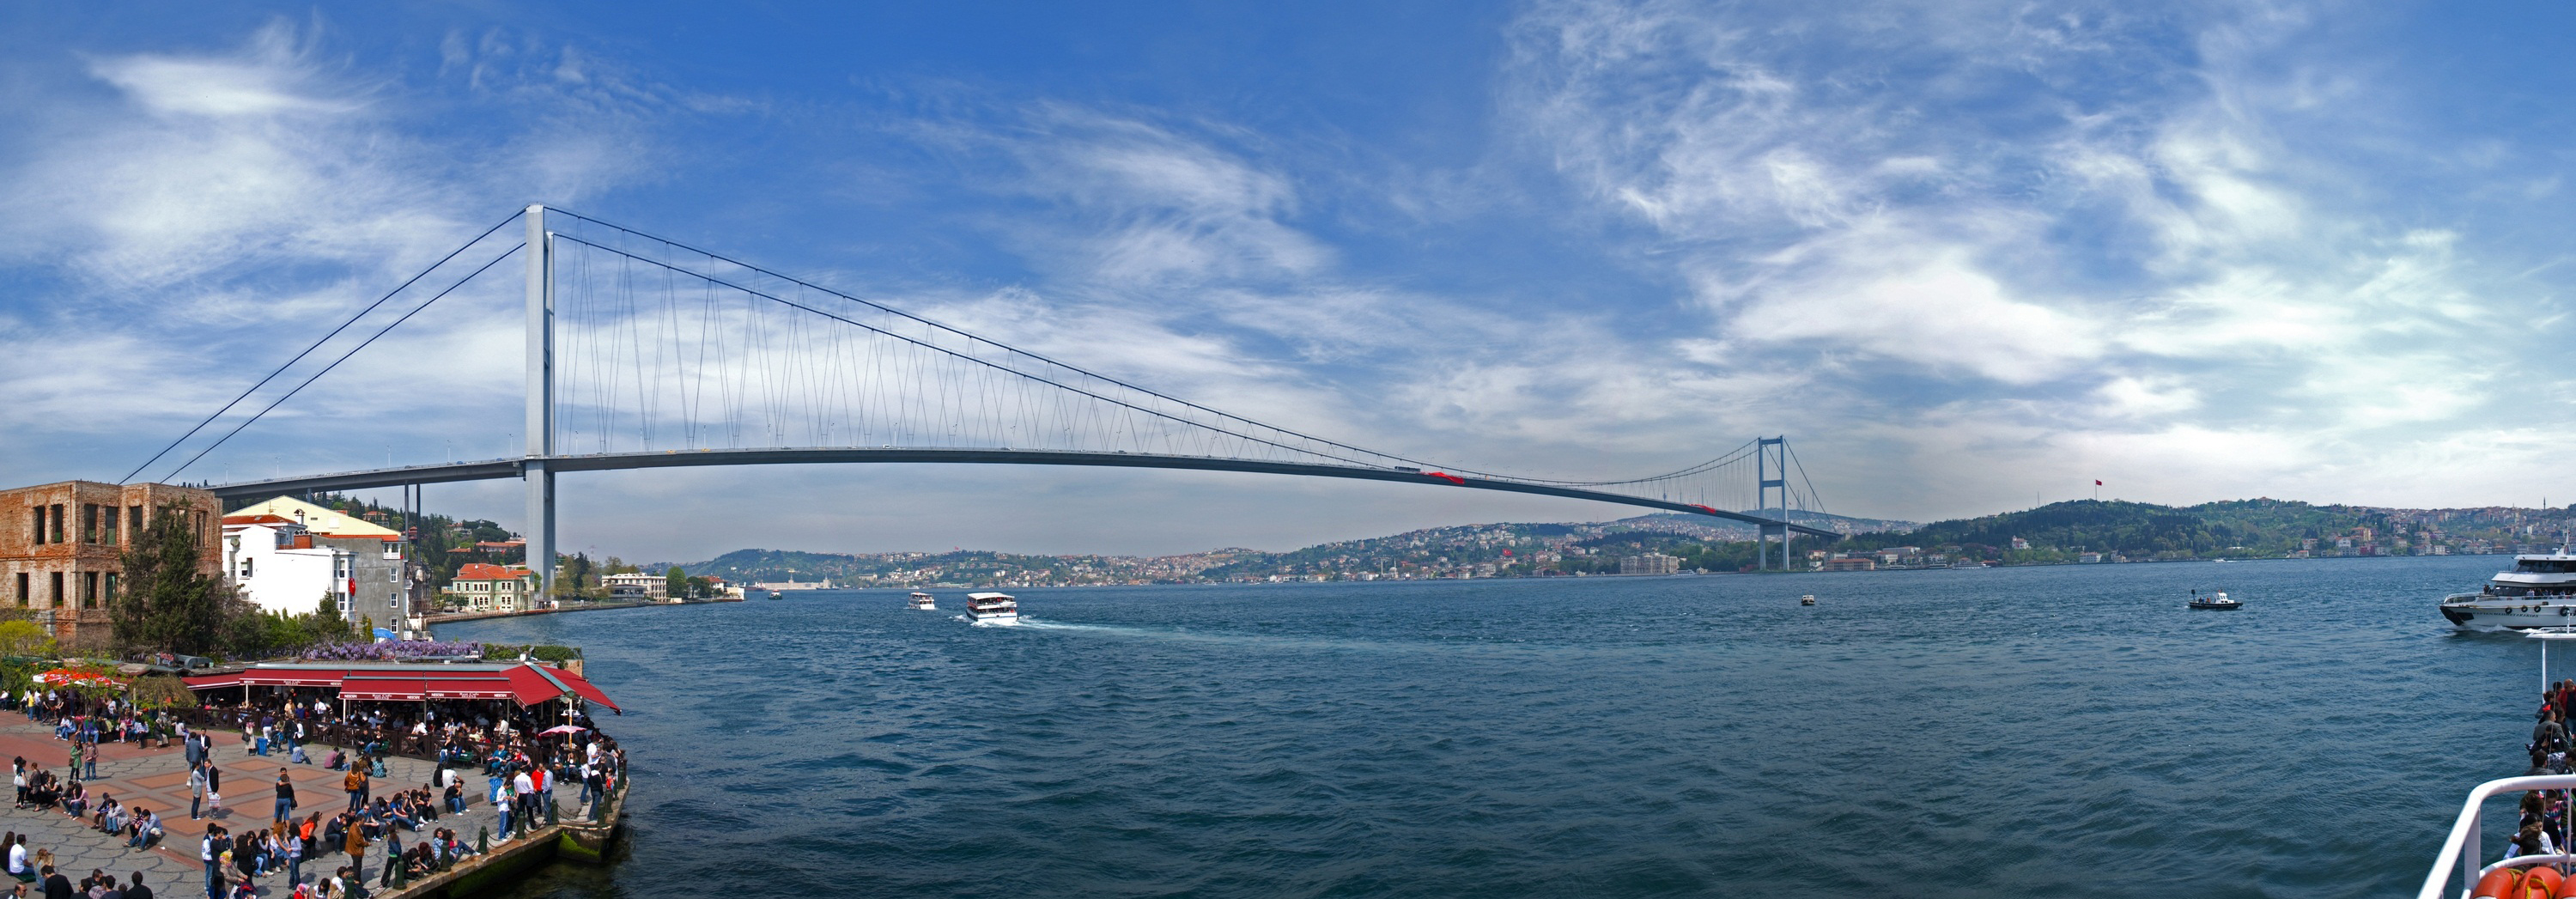 the-bosphorus-bridge-istanbul.jpg